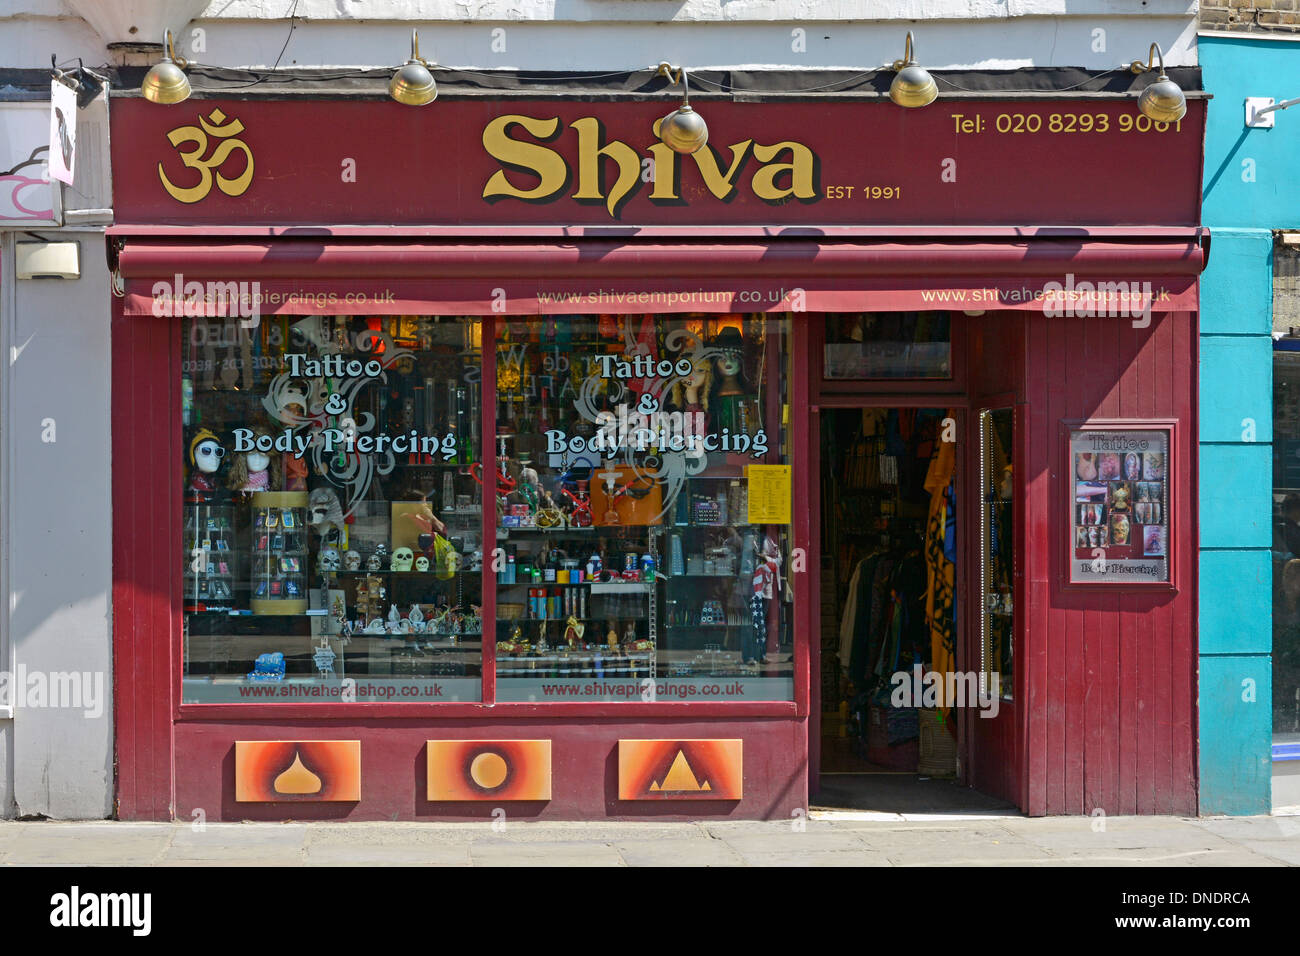 Shiva segno sopra tatuaggio salotto e corpo piercing business shop vetrina e ingresso Greenwich Londra Inghilterra Regno Unito Foto Stock